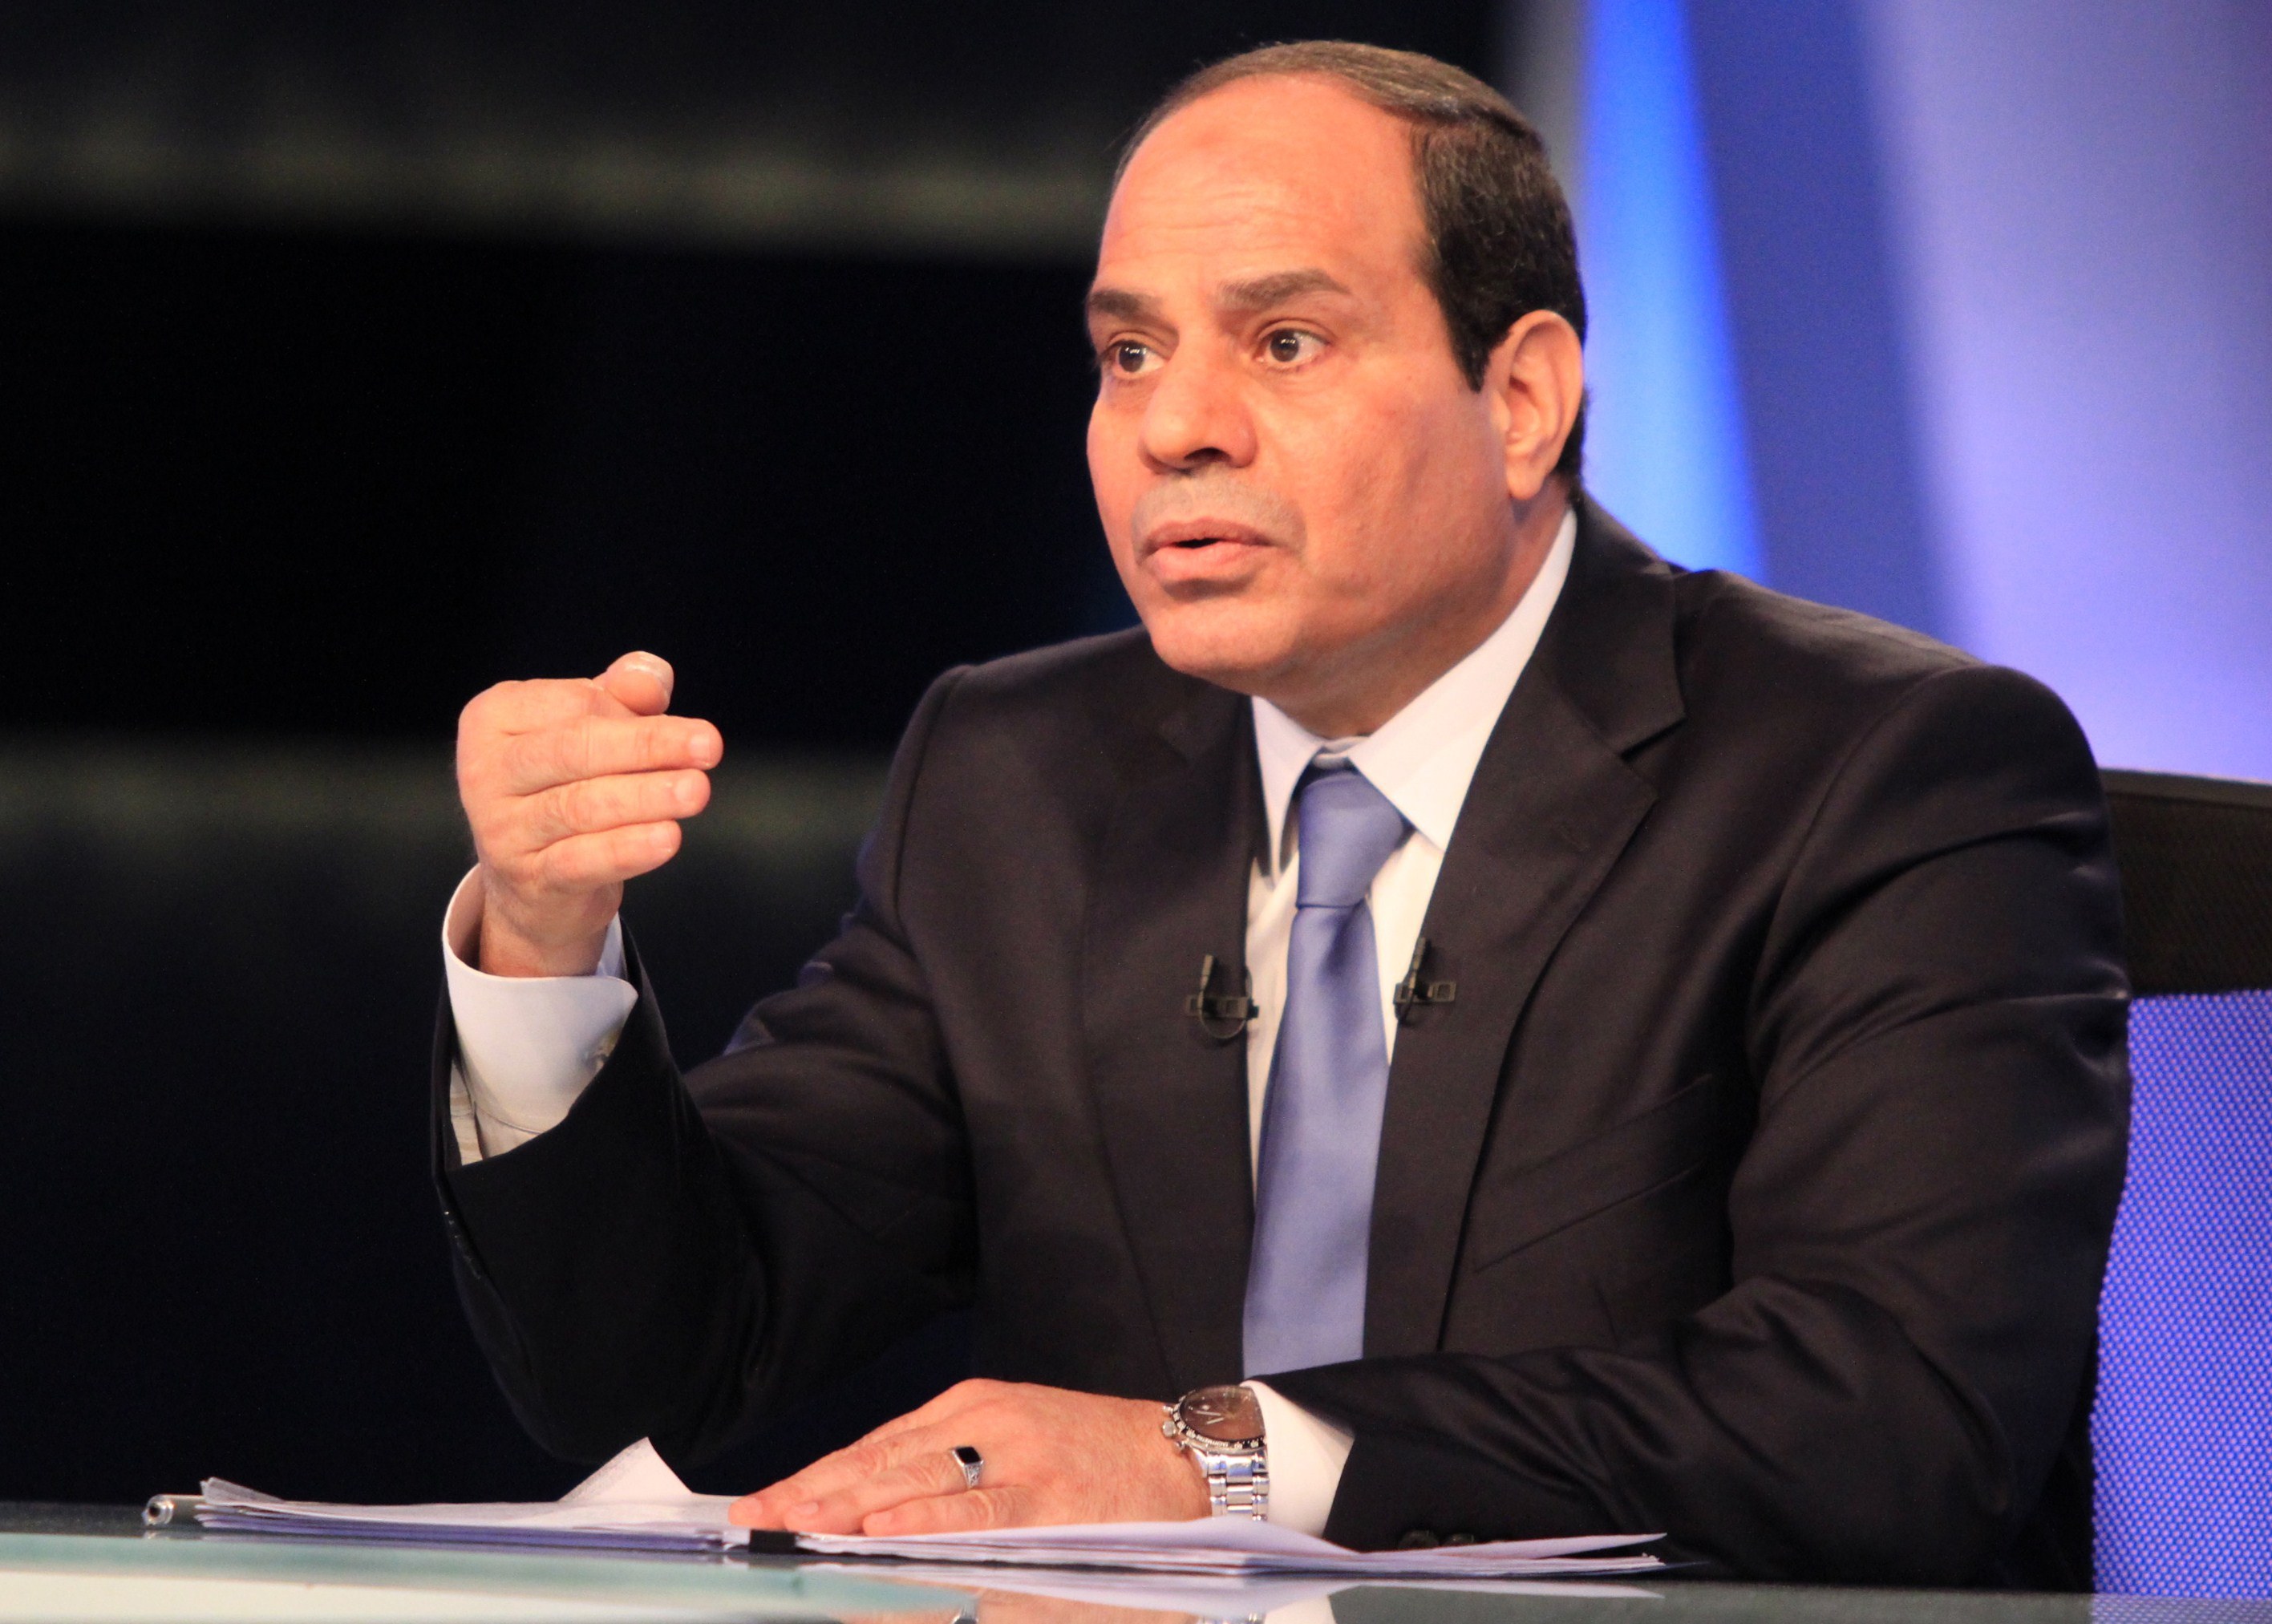 تعديل في قانون الجنسية المصرية يسحبها ممن "يهددون أمن الدولة"!